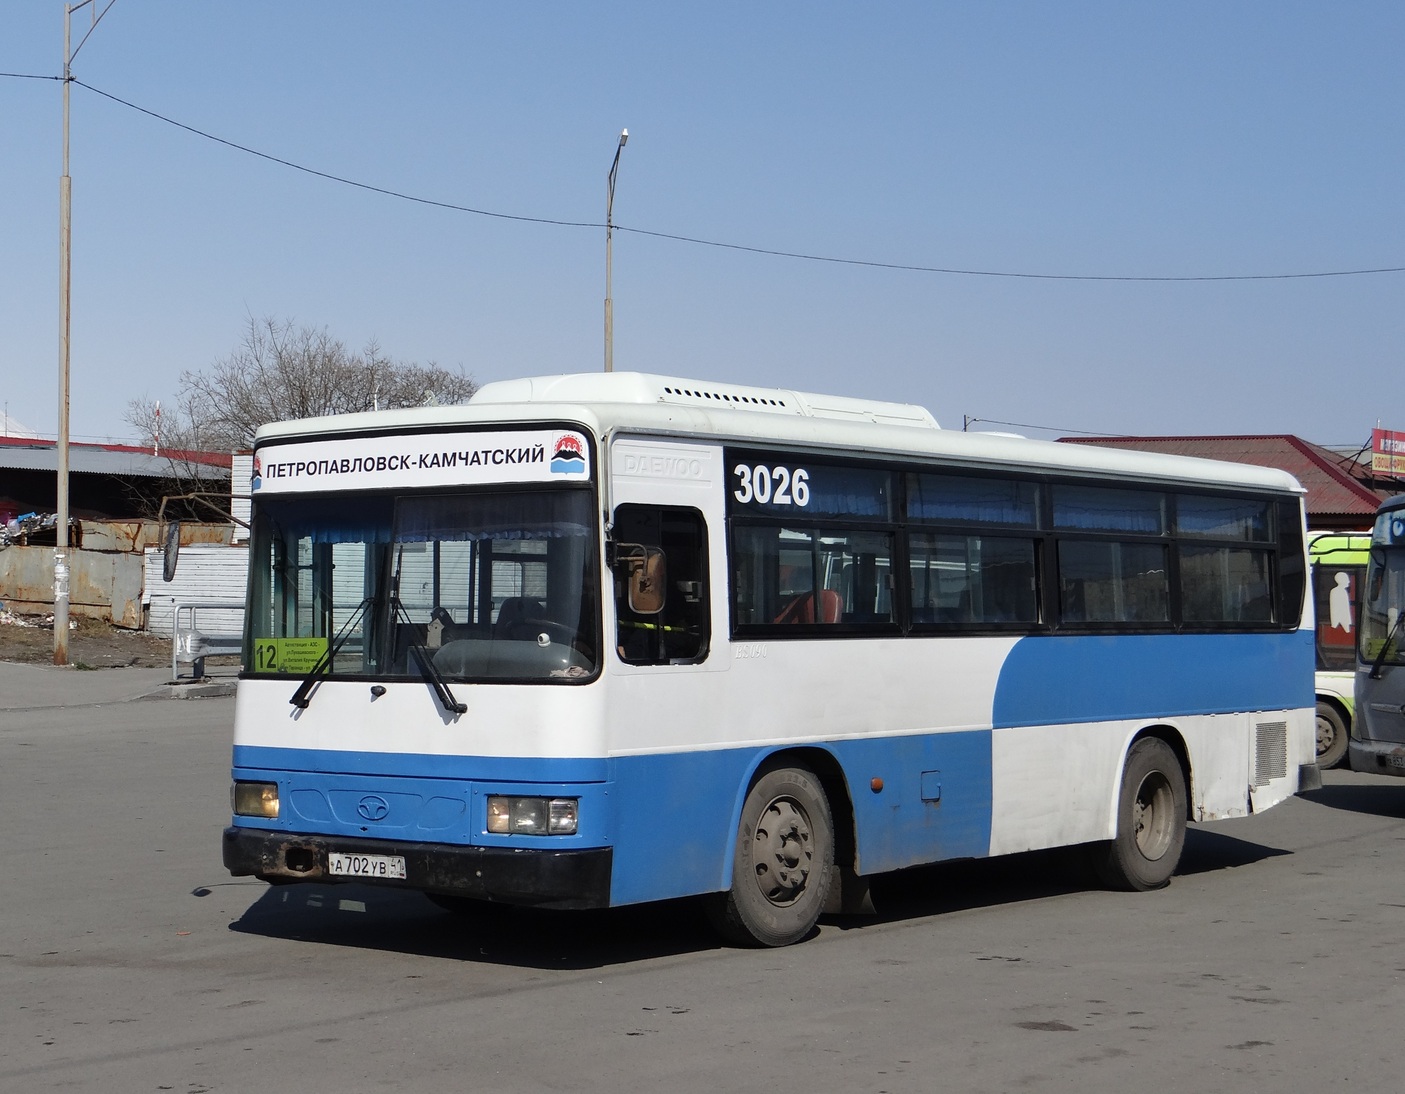 Kamchatskiy kray, Daewoo BS090 Royal Midi (Busan) Nr. 3026